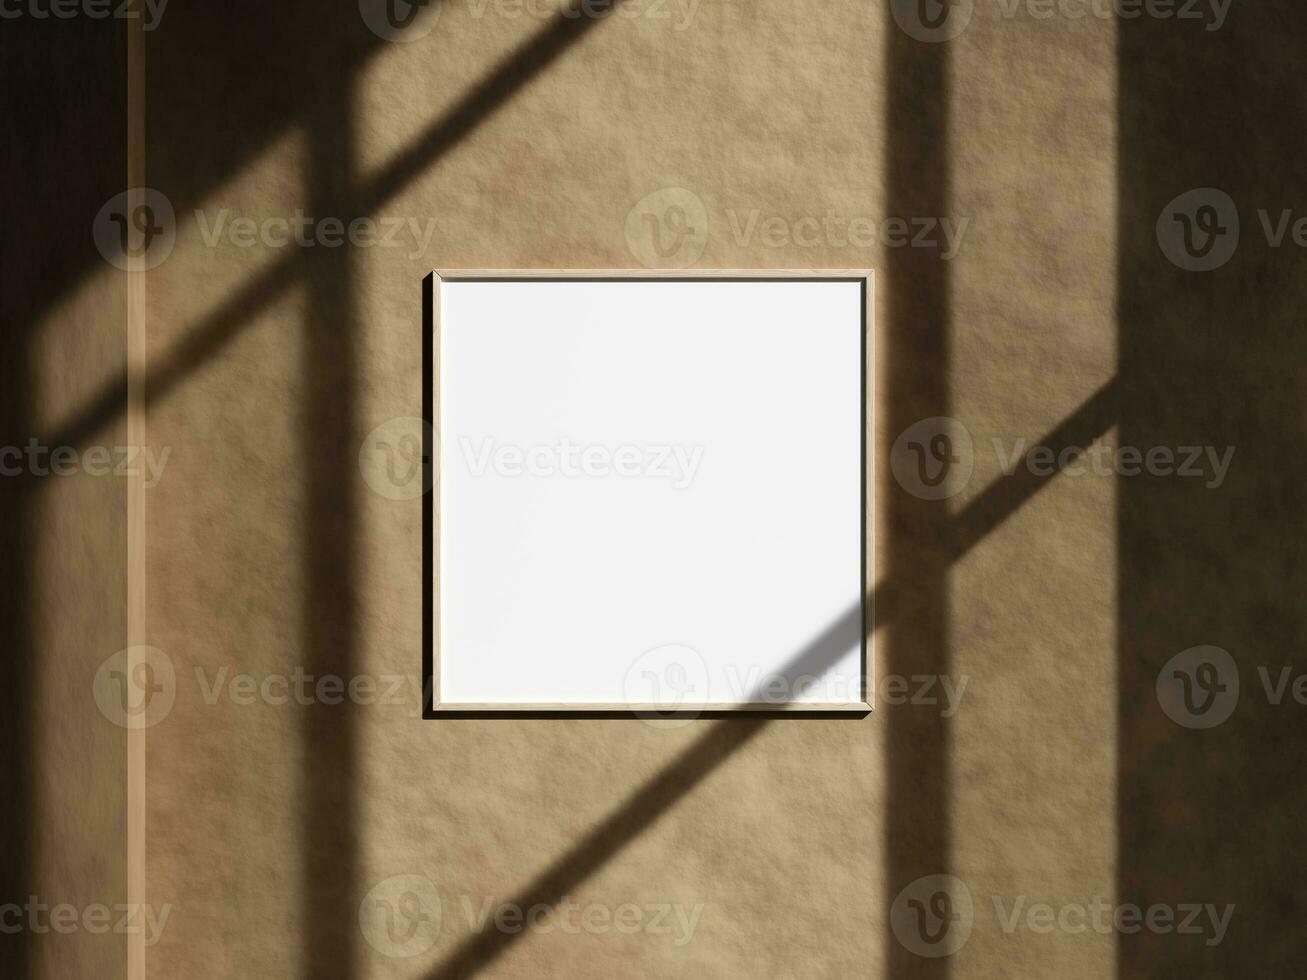 minimal mur photo Cadre avec fenêtre ombre